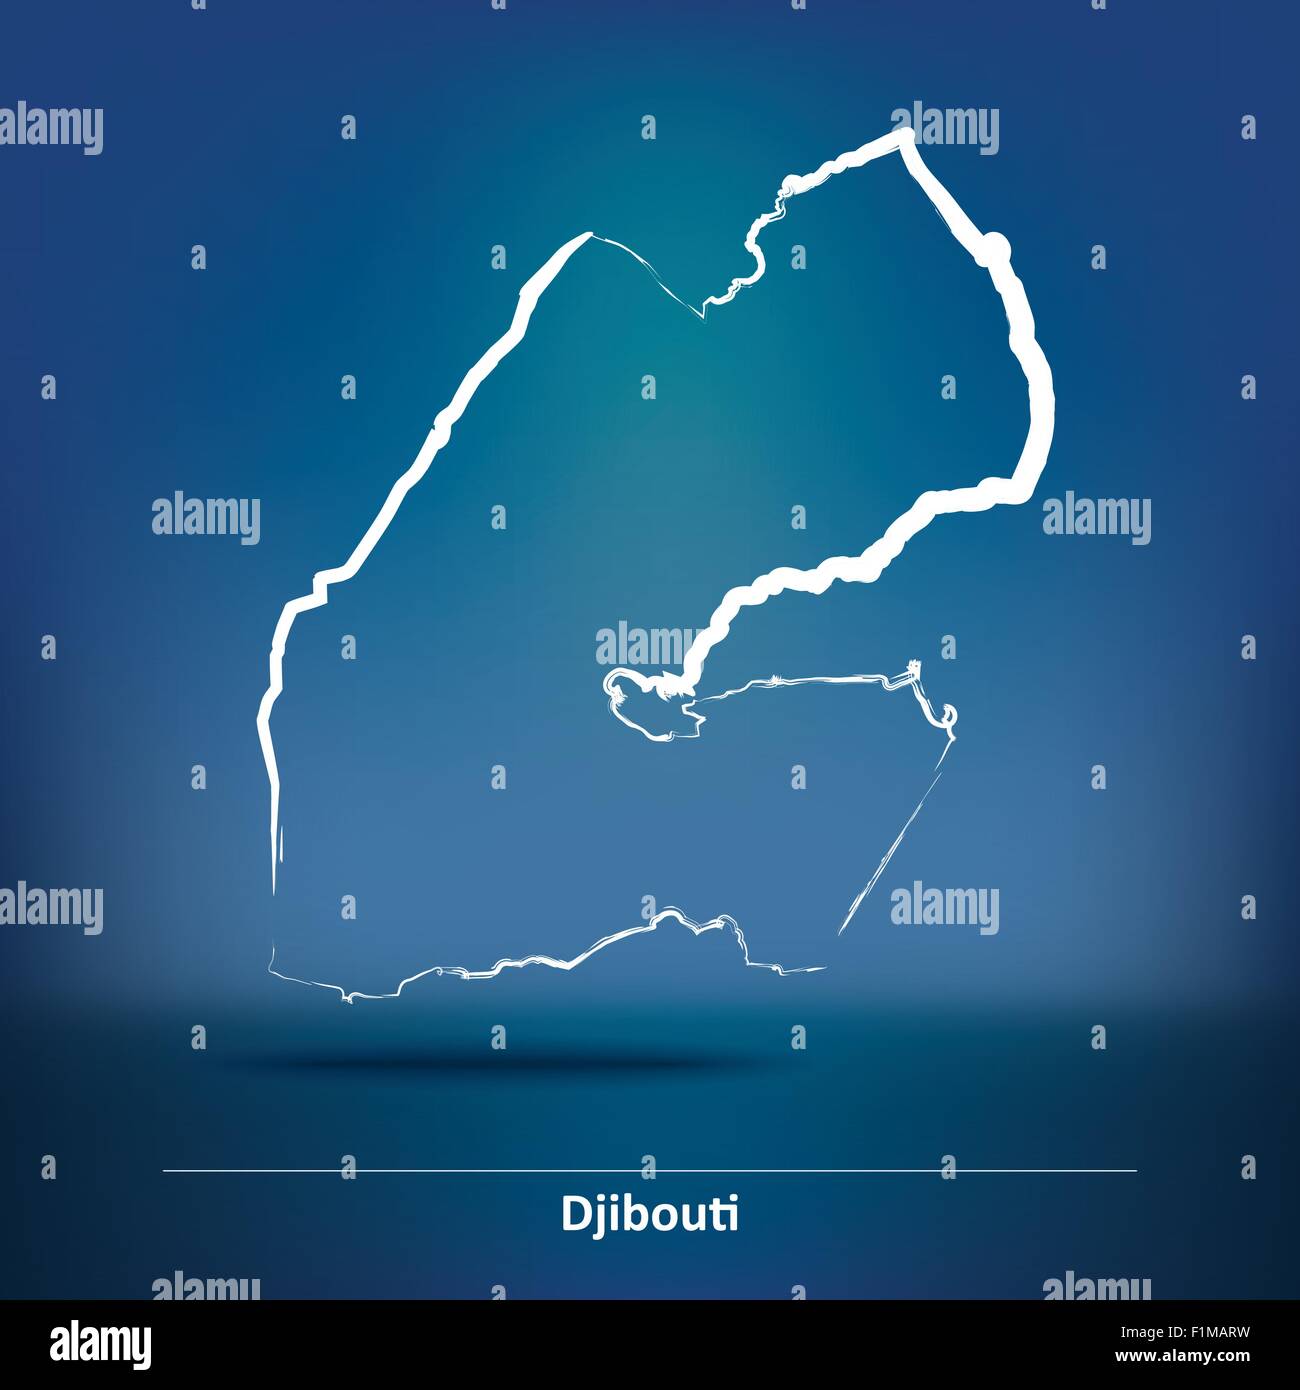 Karte von Djibouti - Vektor-Illustration Doodle Stock Vektor